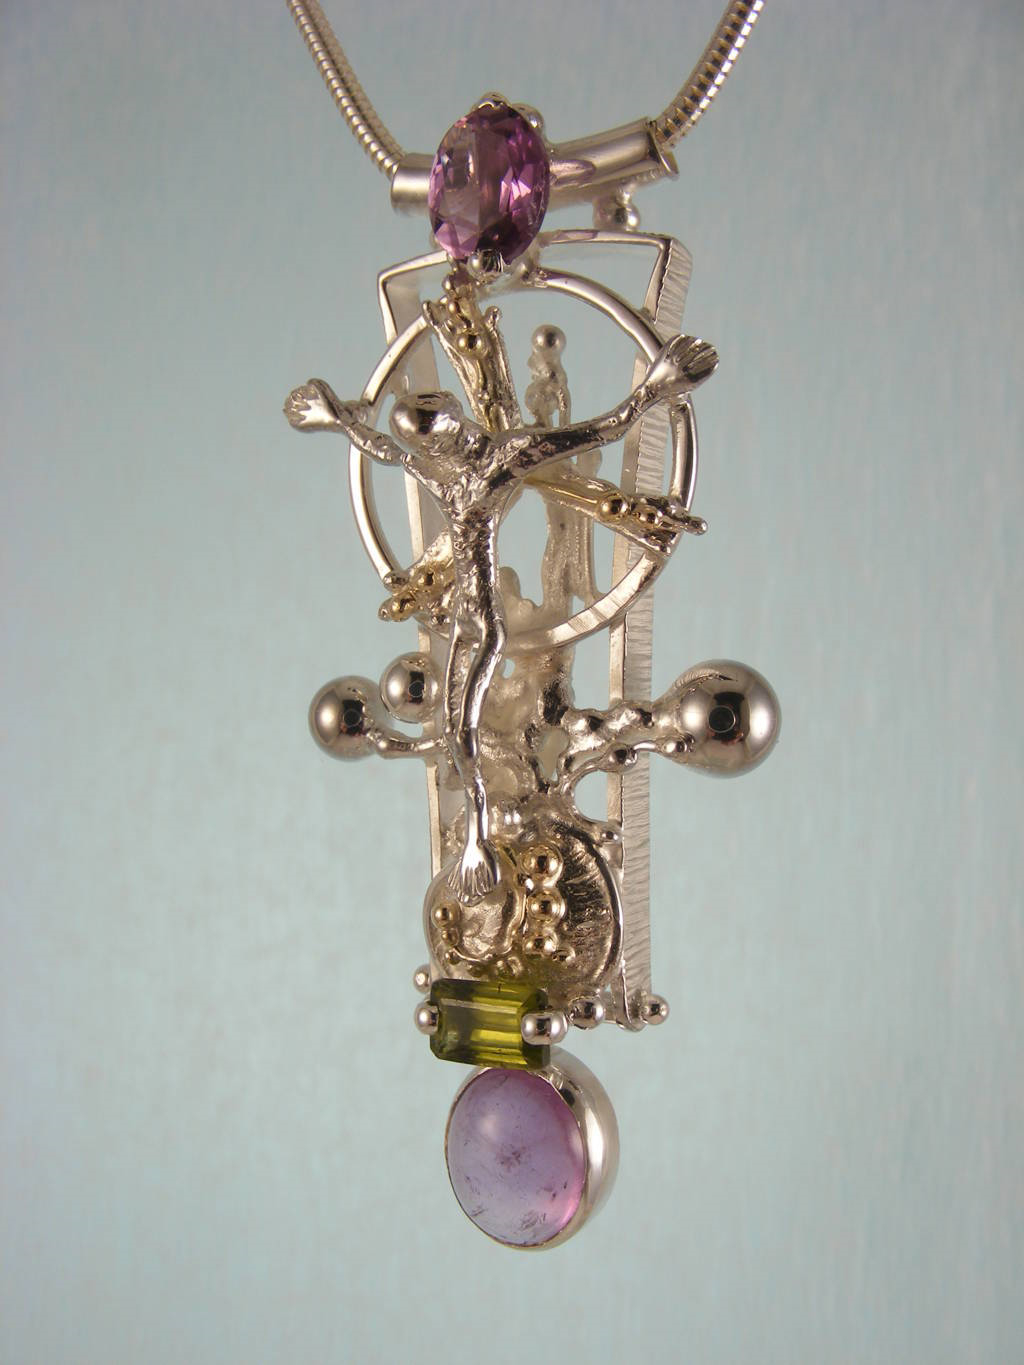 módní šperky, modní styl, sběratelská položka, šperky vyrobené ze stříbra a zlata, ručně vyrobený přívěsek s ametystem a olivínem, Gregory Pyra Piro přívěsek 3050